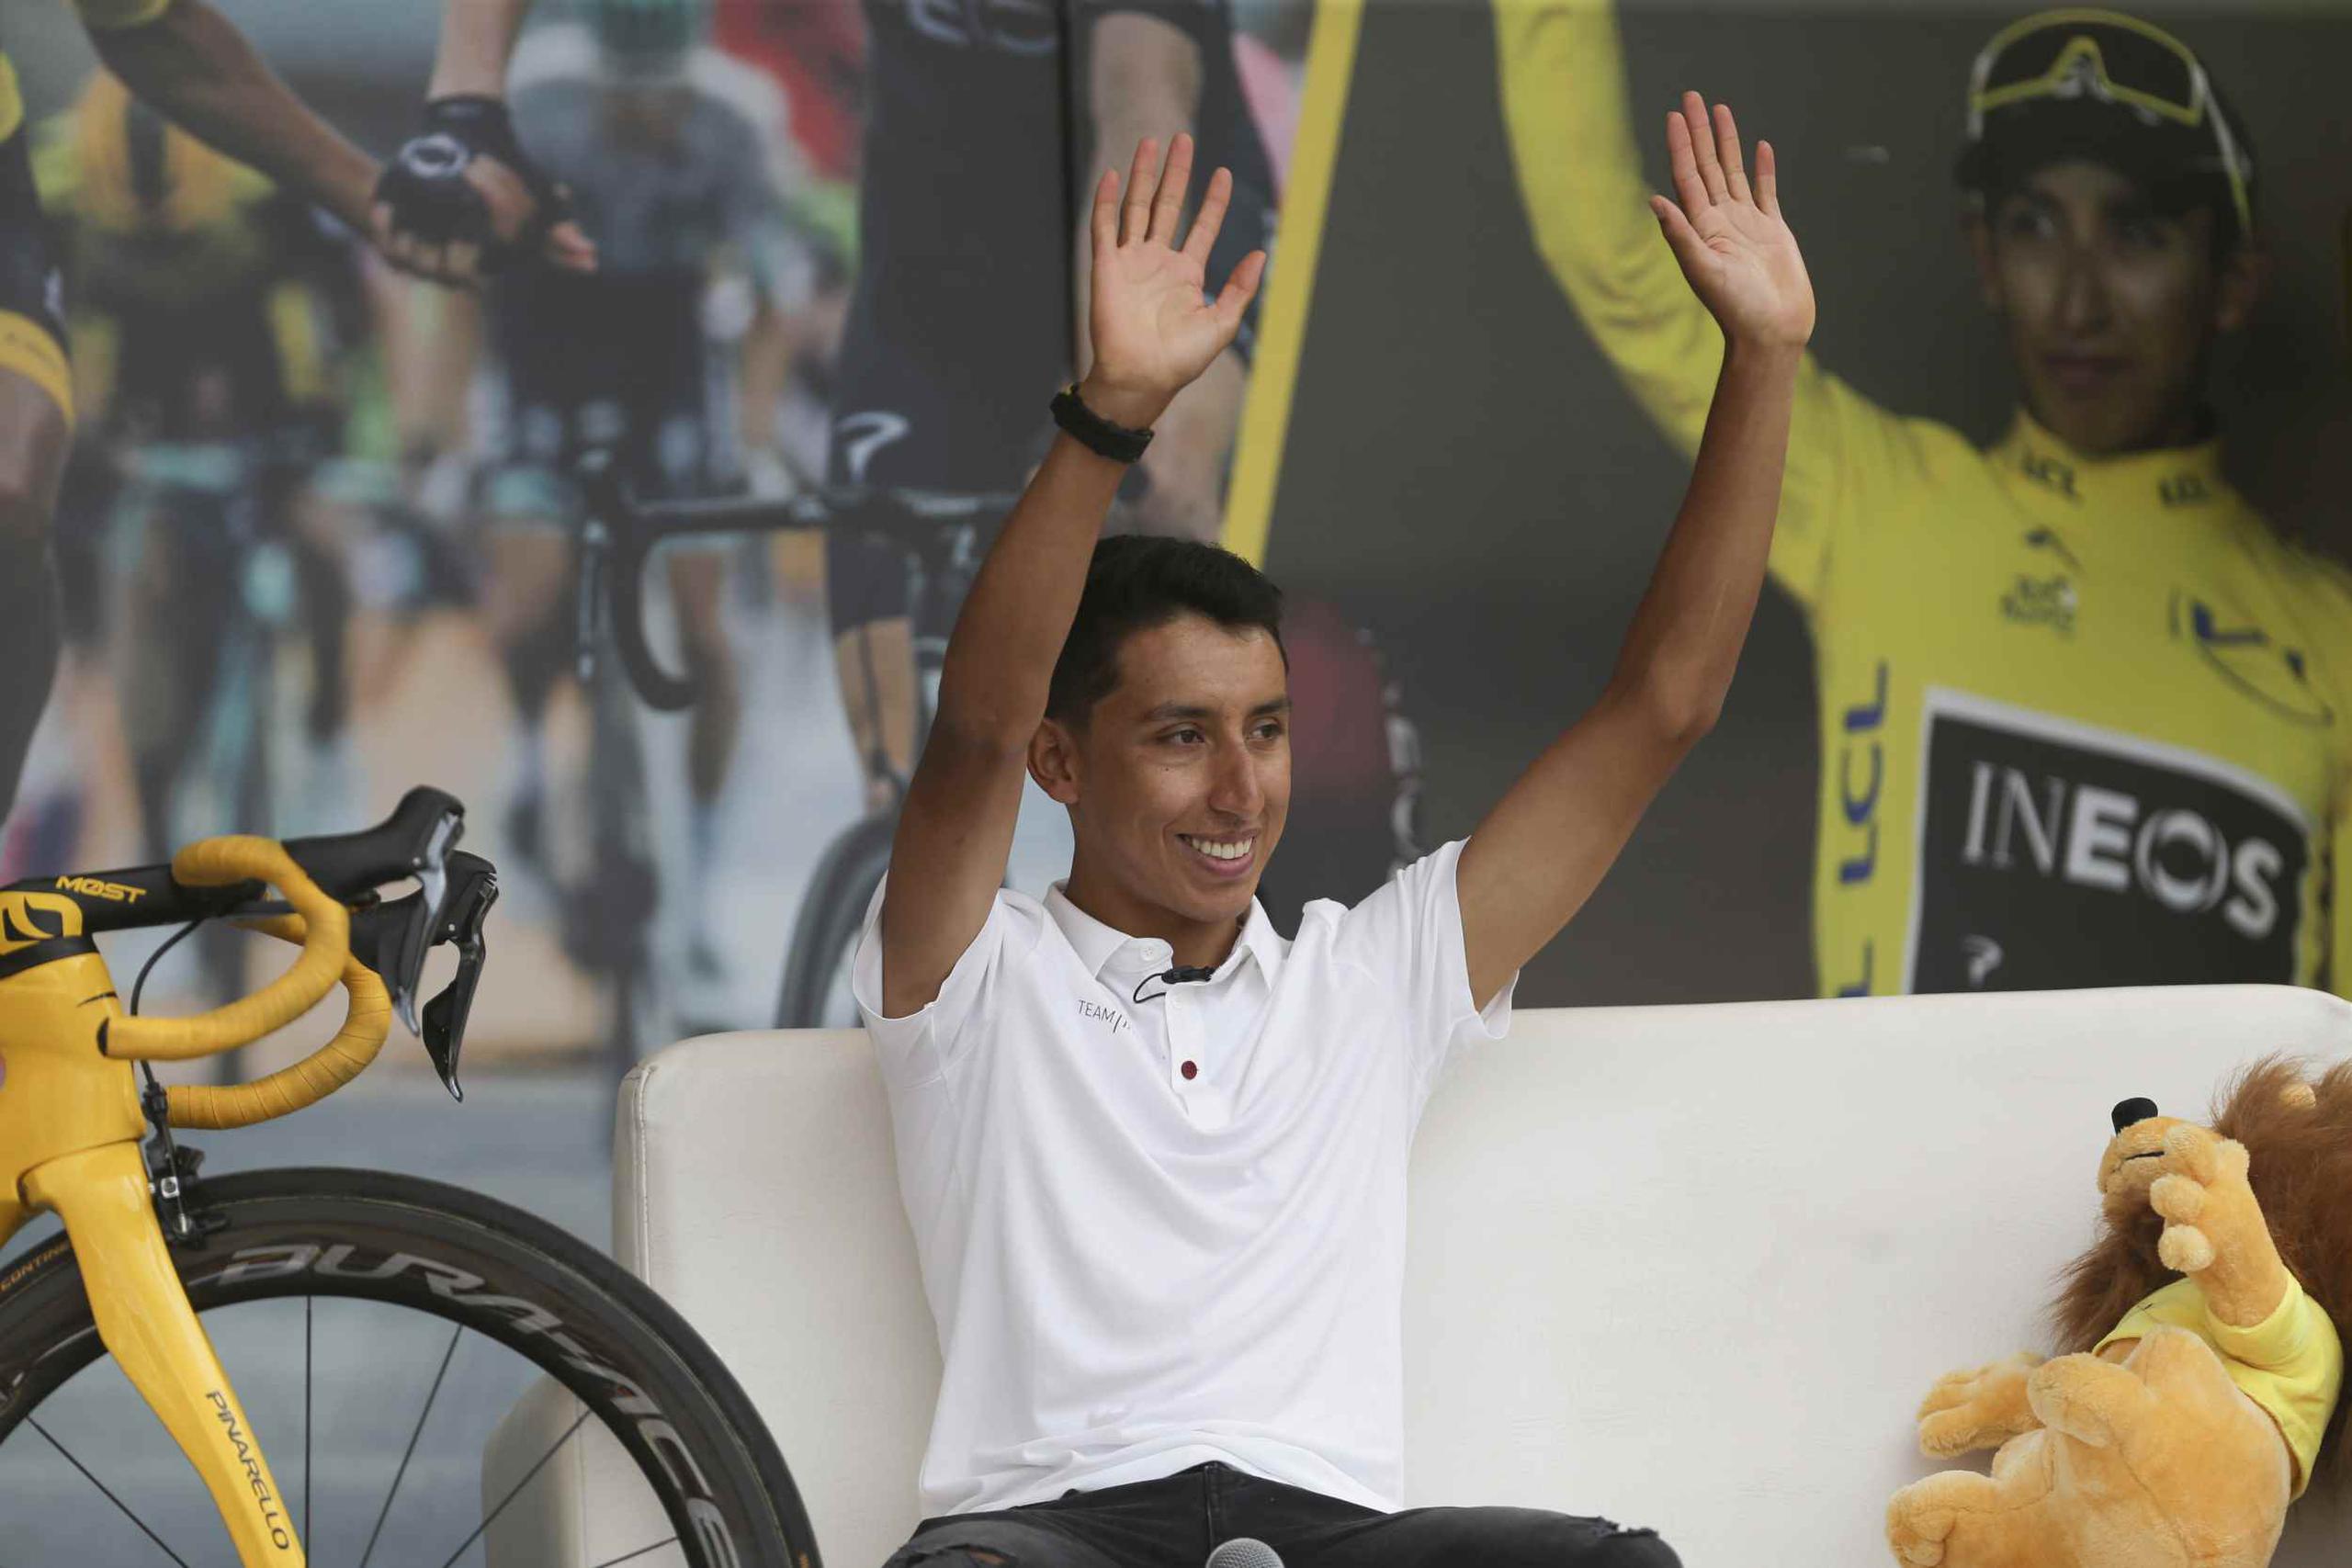 El ganador del Tour de Francia Egan Bernal saluda a la multitud durante la fiesta en su honor en Zapaquirá, Colombia. (AP / Iván Valencia)